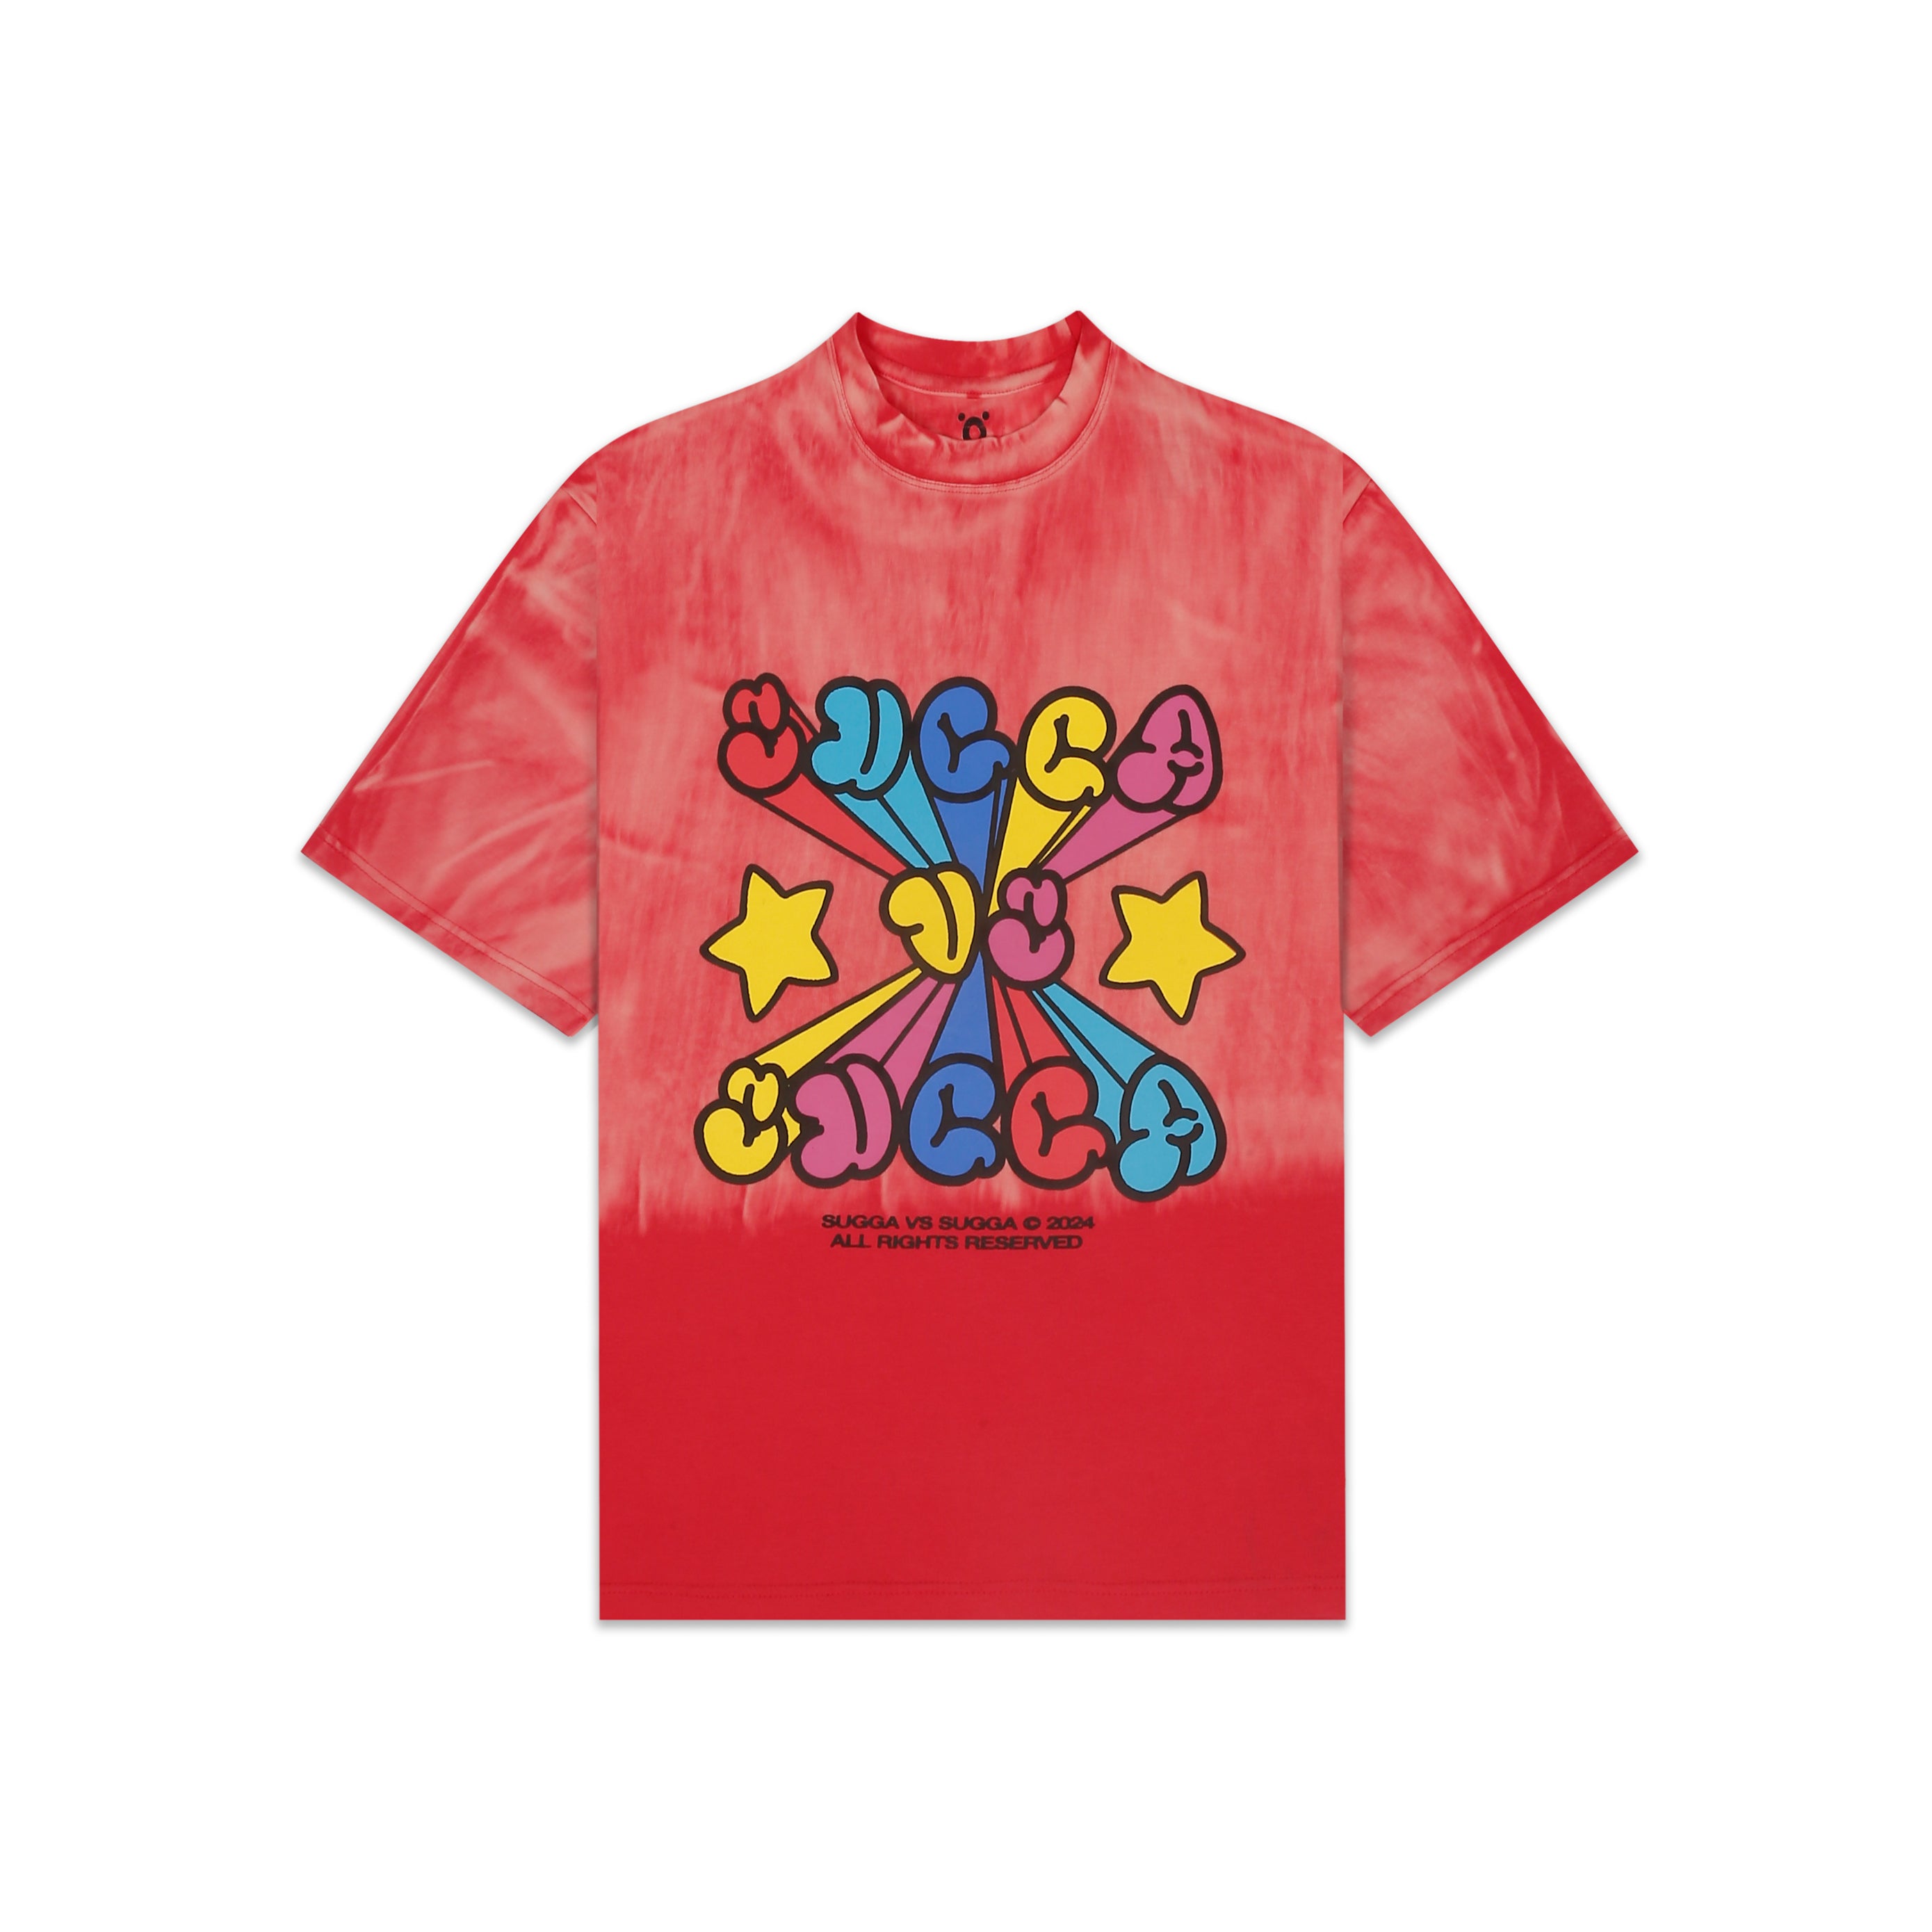 Sugga Cream Roll T-shirt - Red Velvet